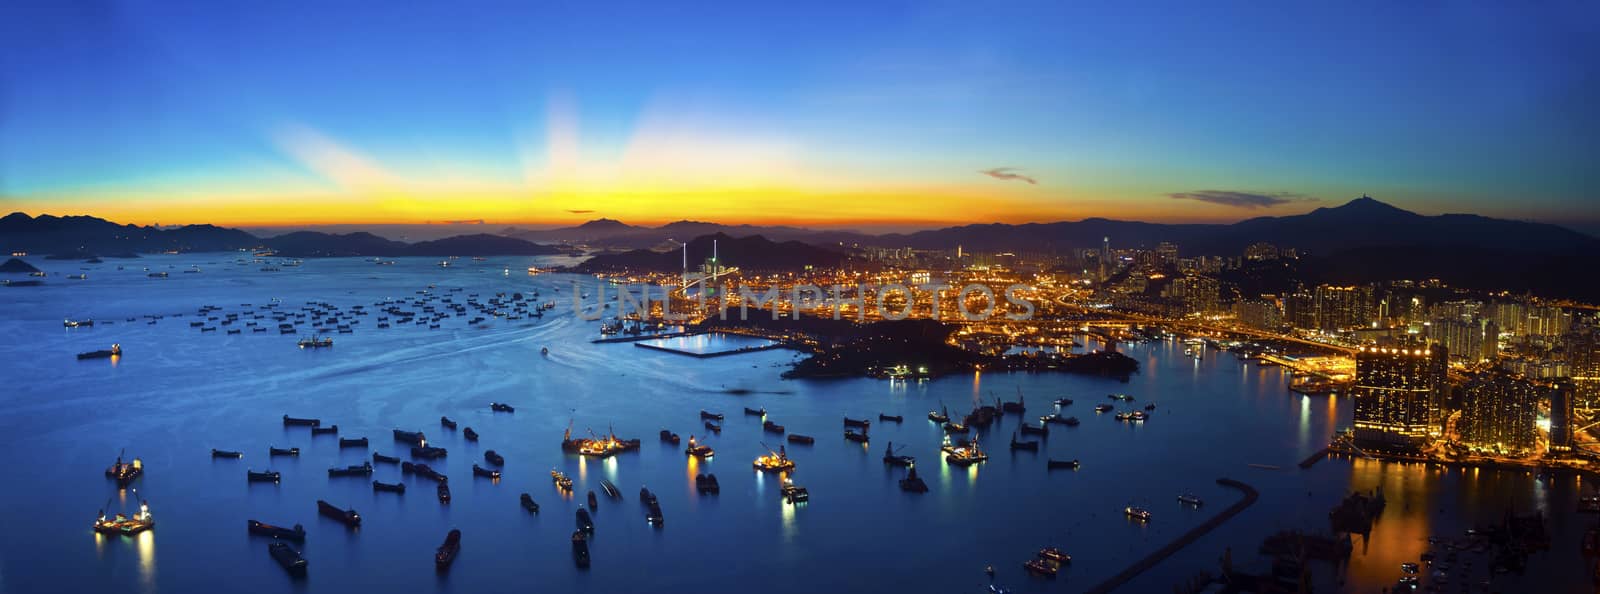 Hong Kong majestic sunset